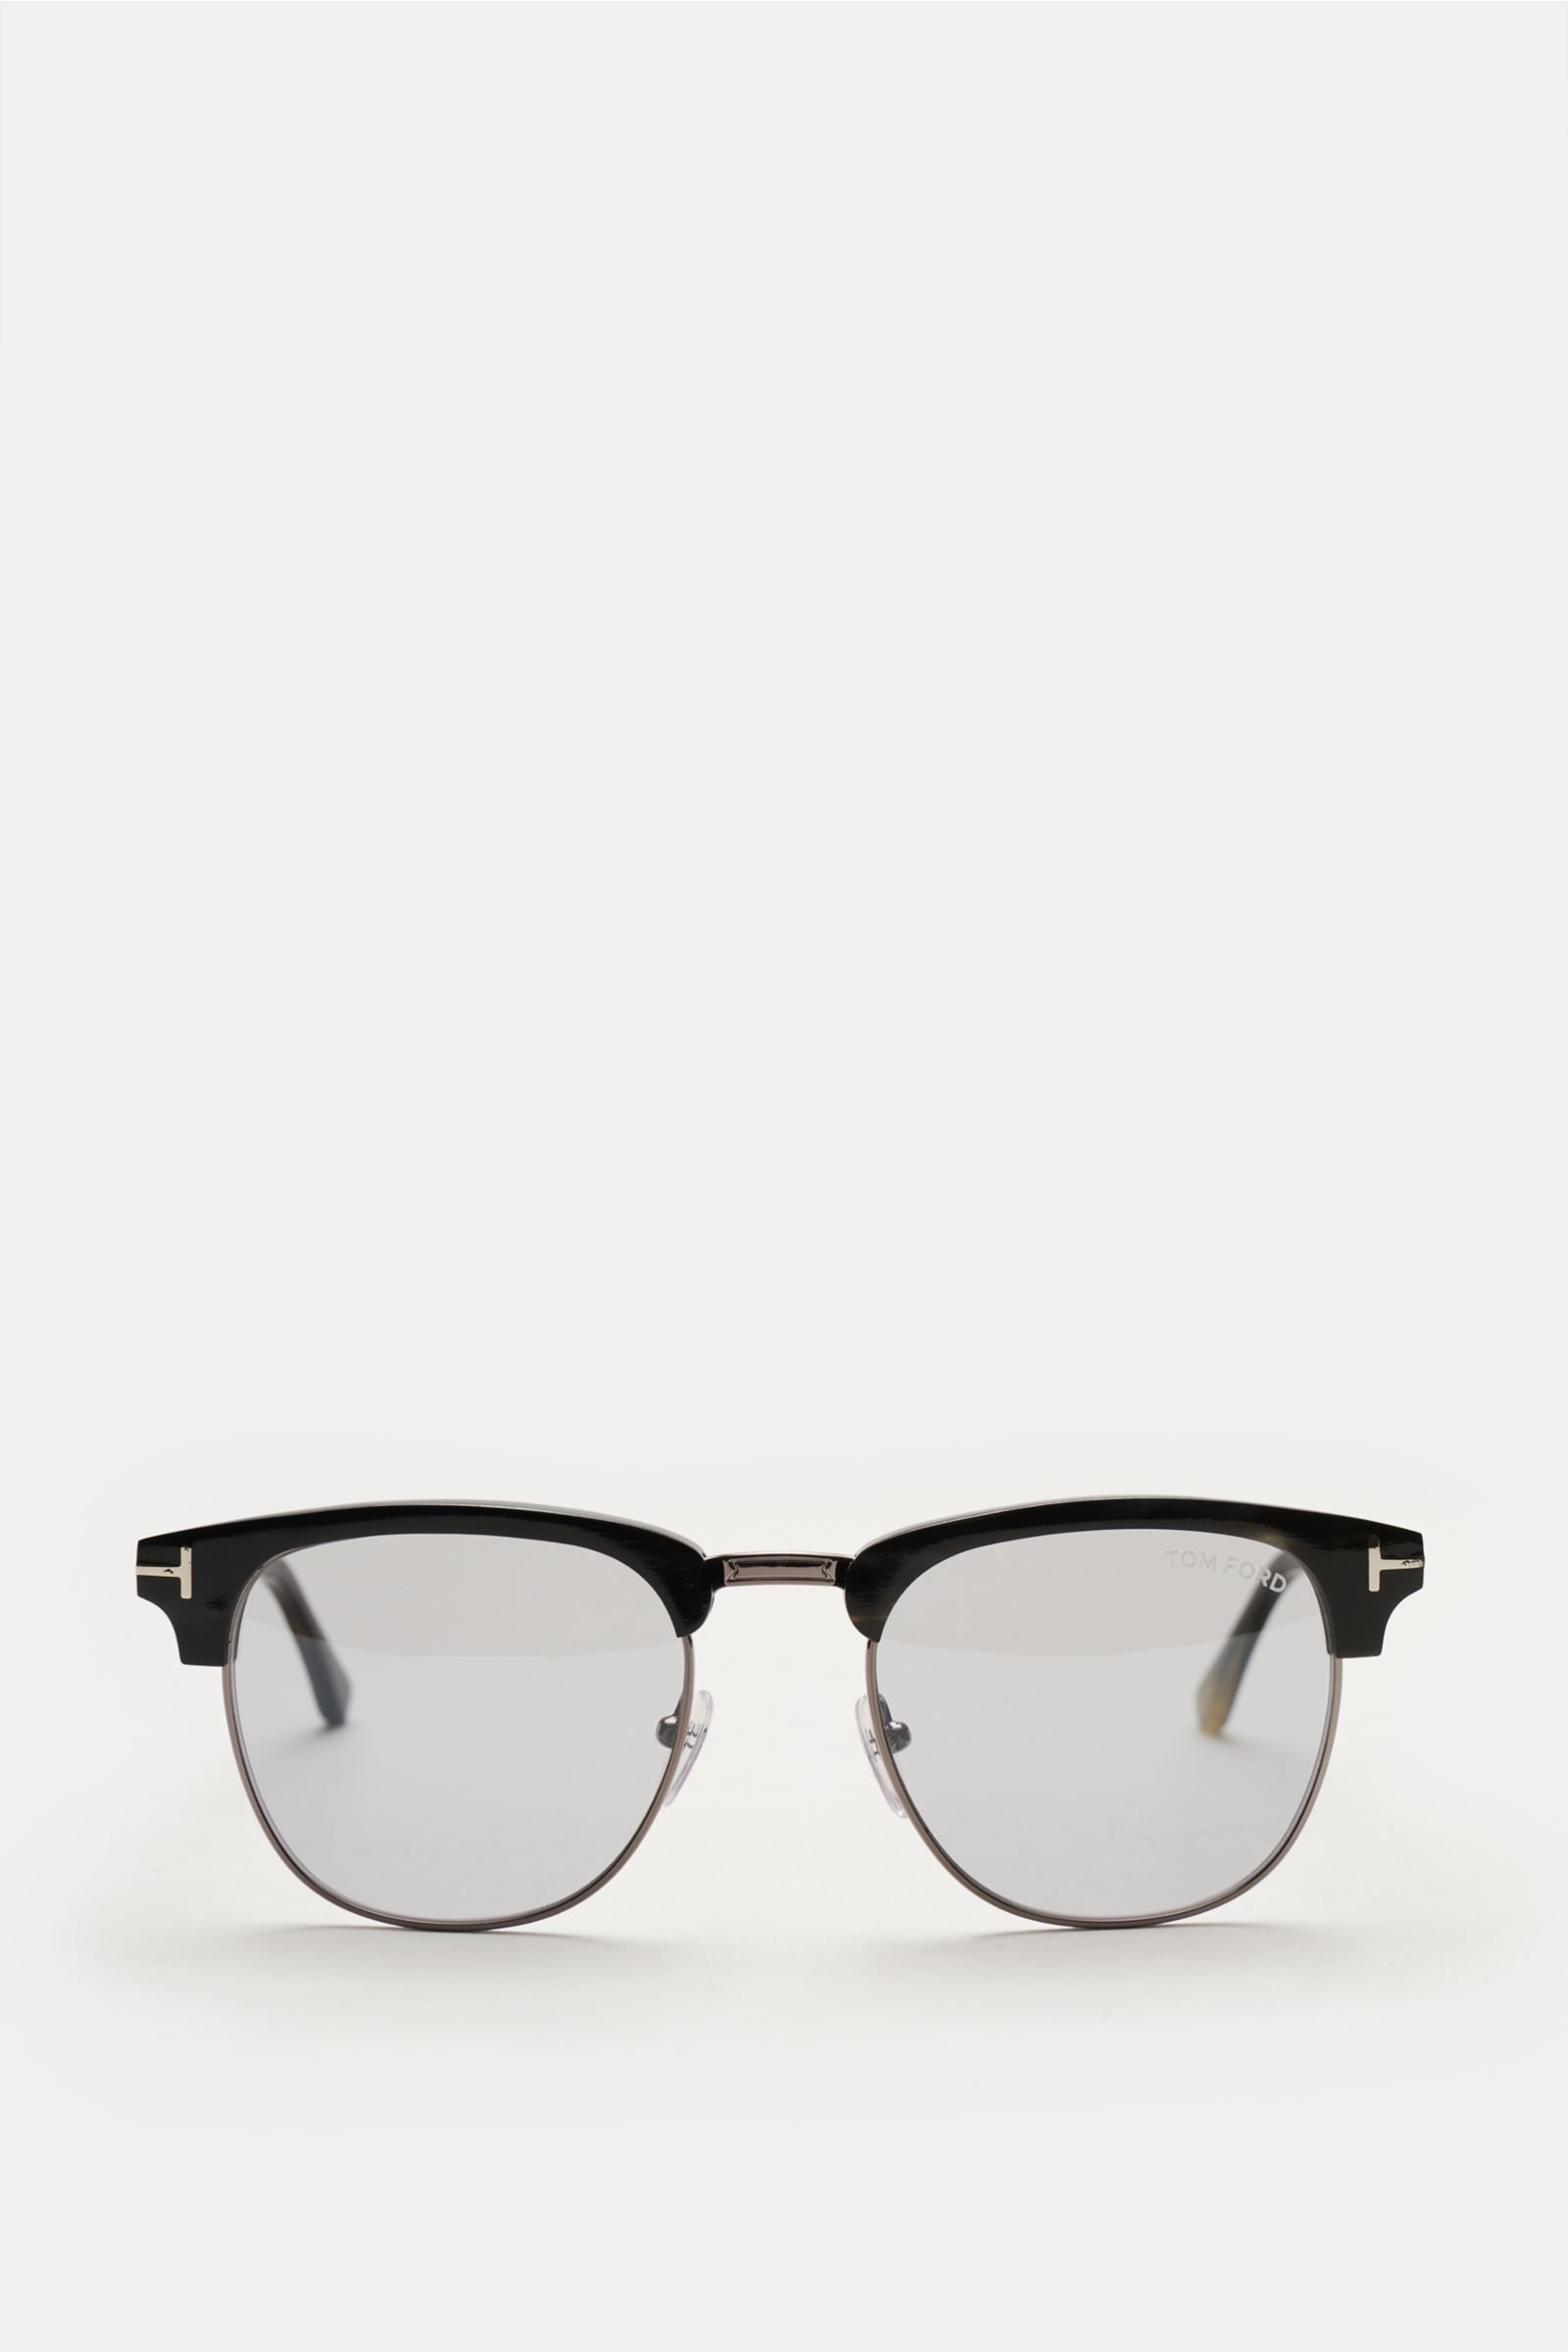 Sonnenbrille 'Tom No.17' anthrazit/grau